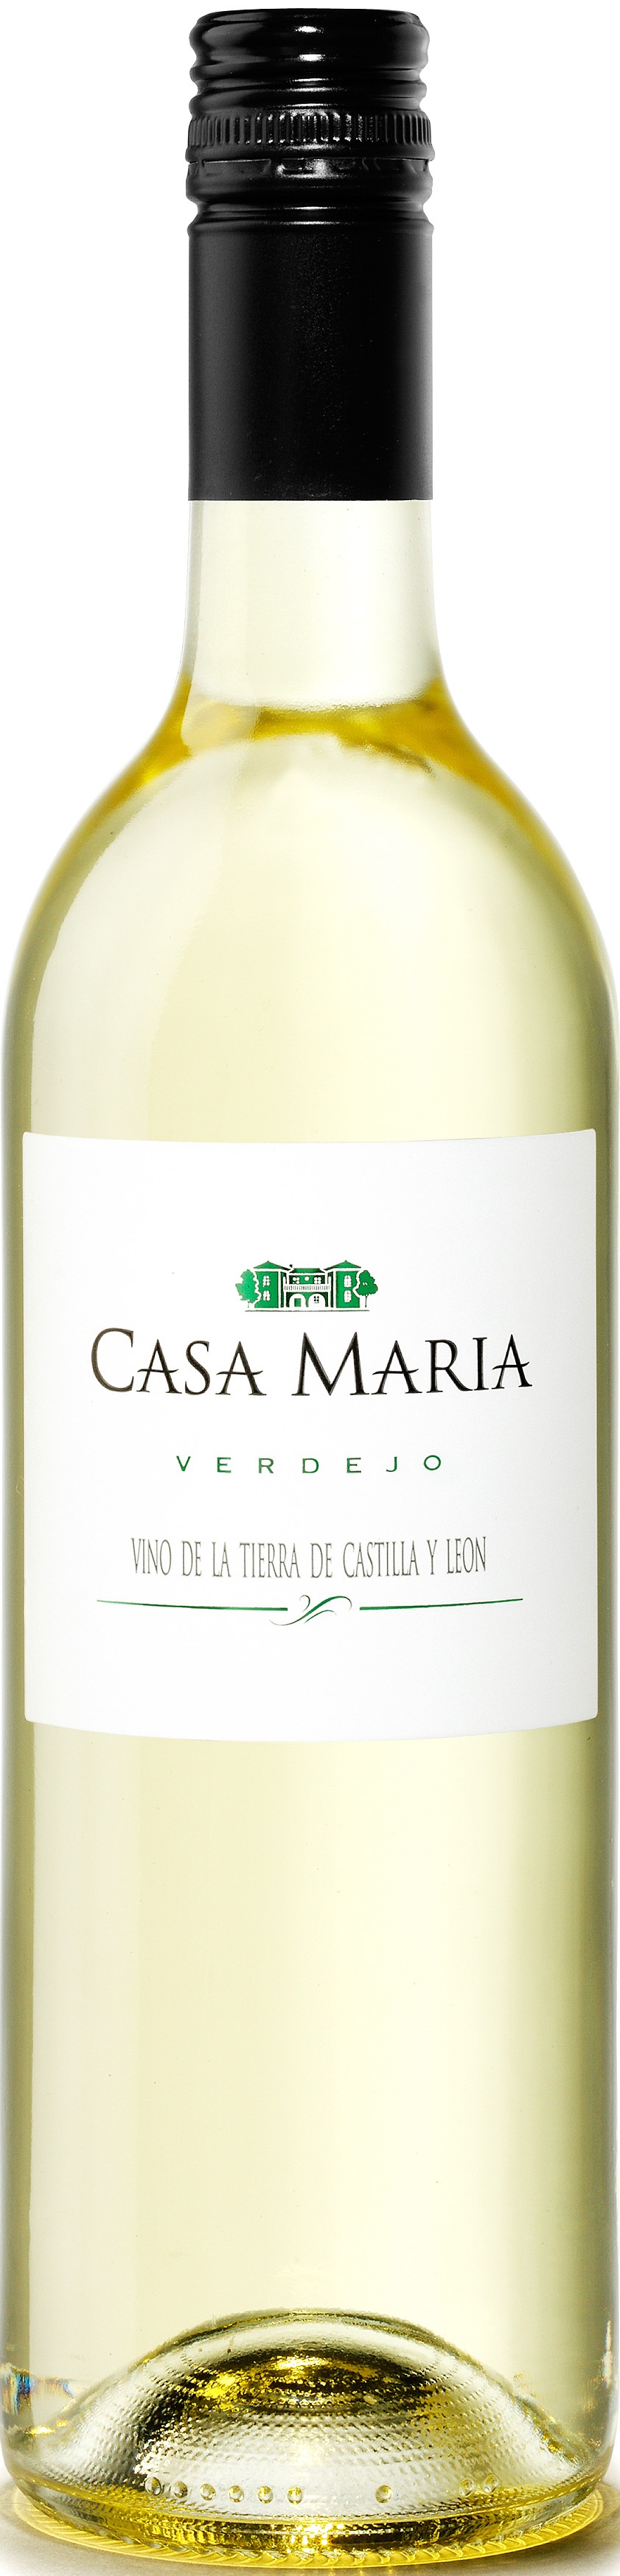 Bild von der Weinflasche Casa María Verdejo